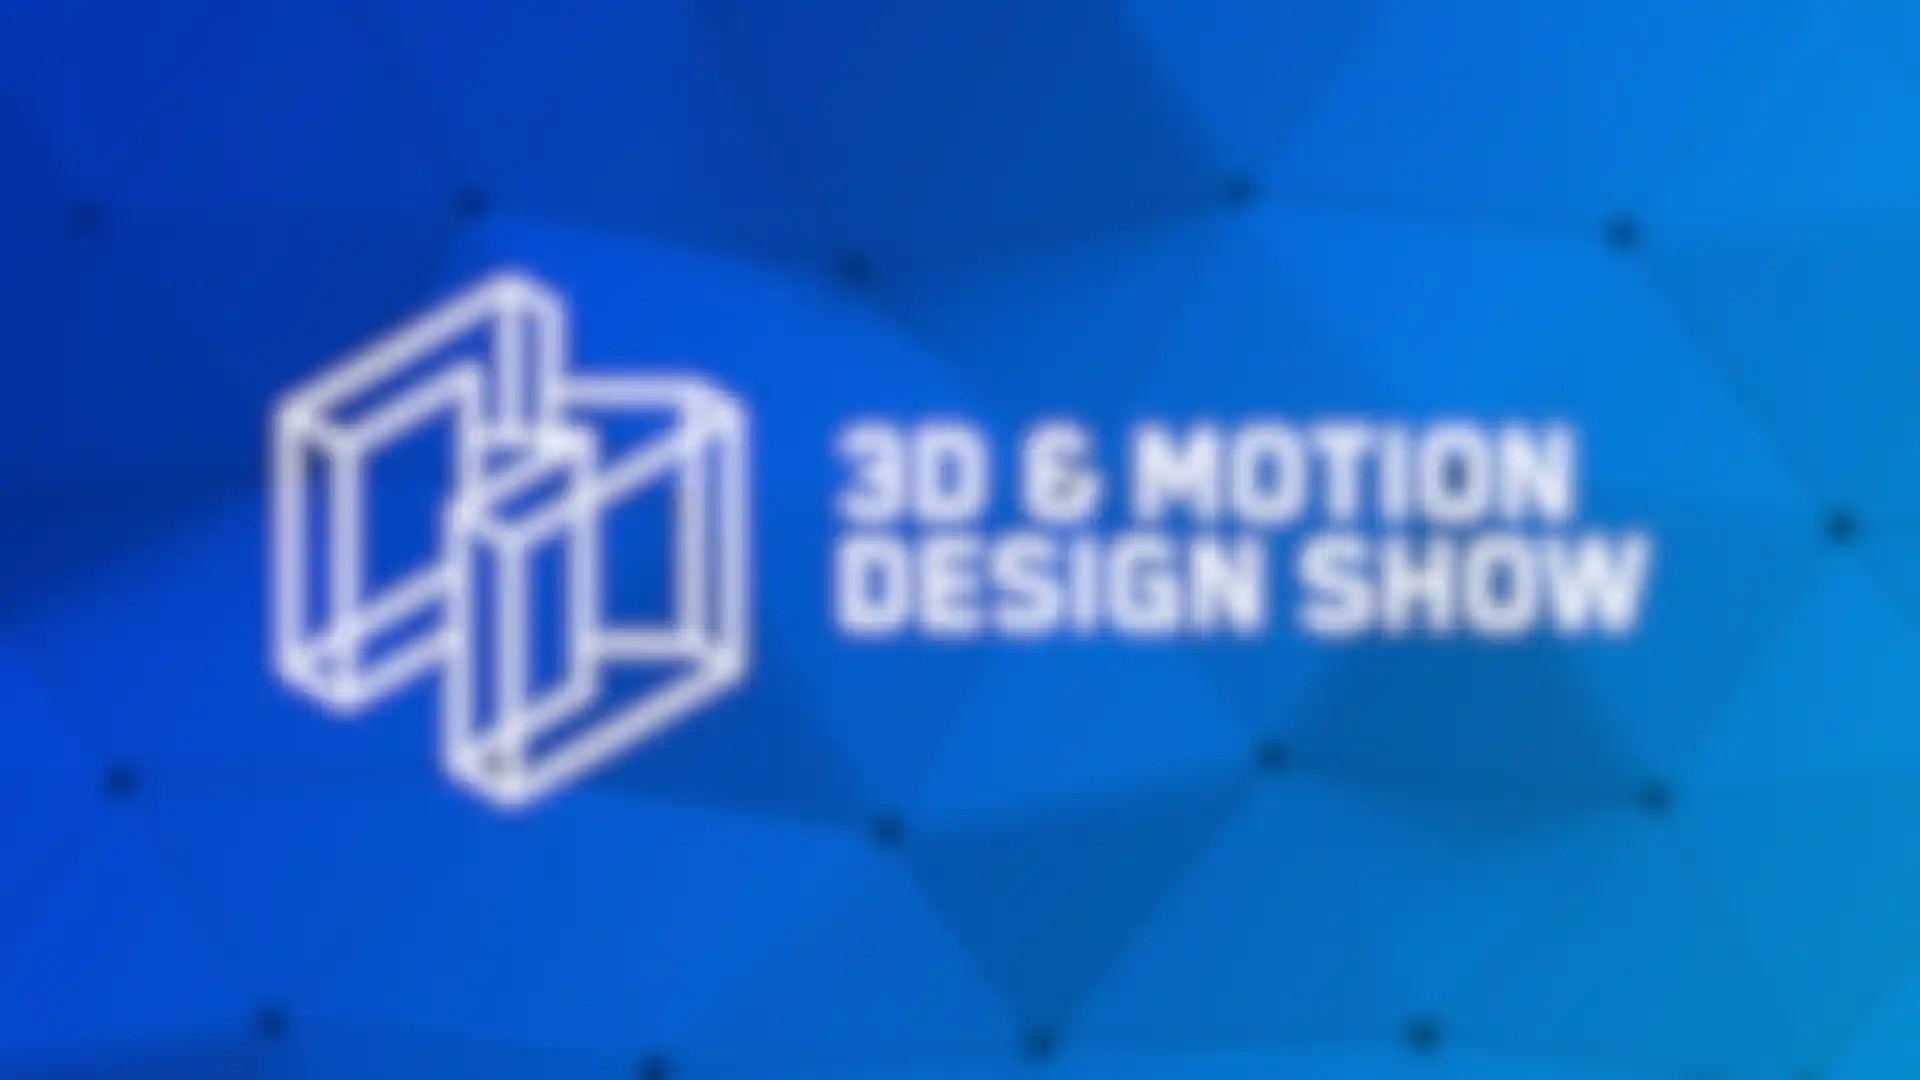 Neues zu Maxons Produkt-Updates auf der 3D and Motion Design Show im Oktober image